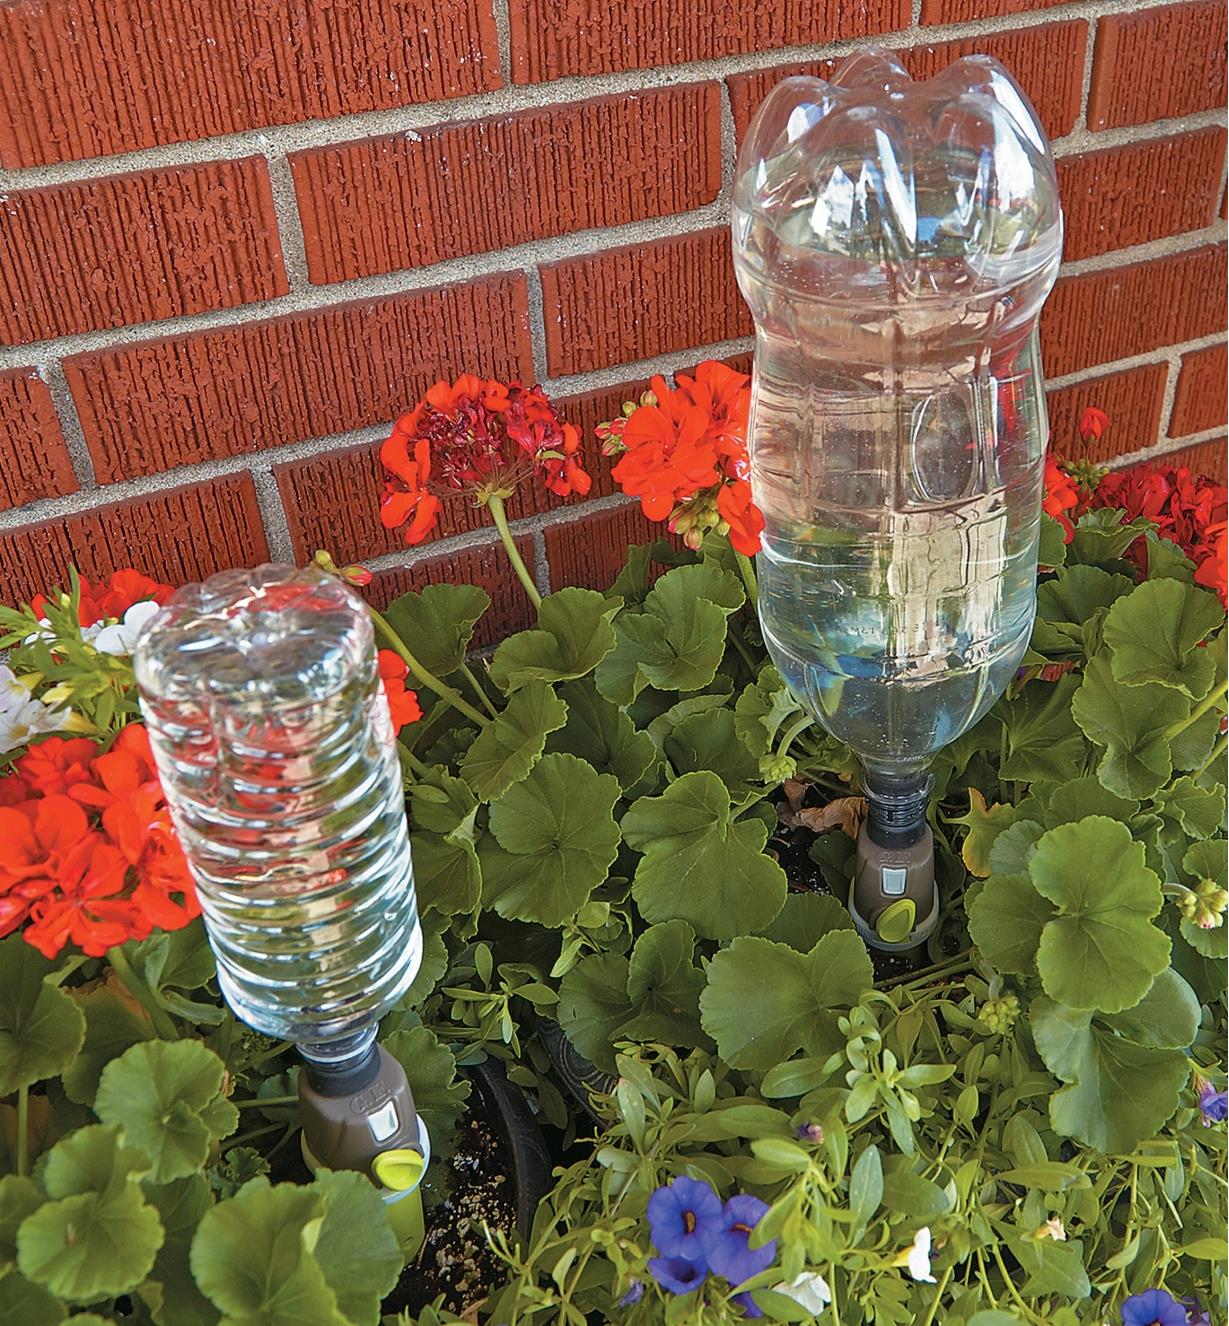 Deux piquets goutteurs munis d'une bouteille d'eau dans un jardin floral